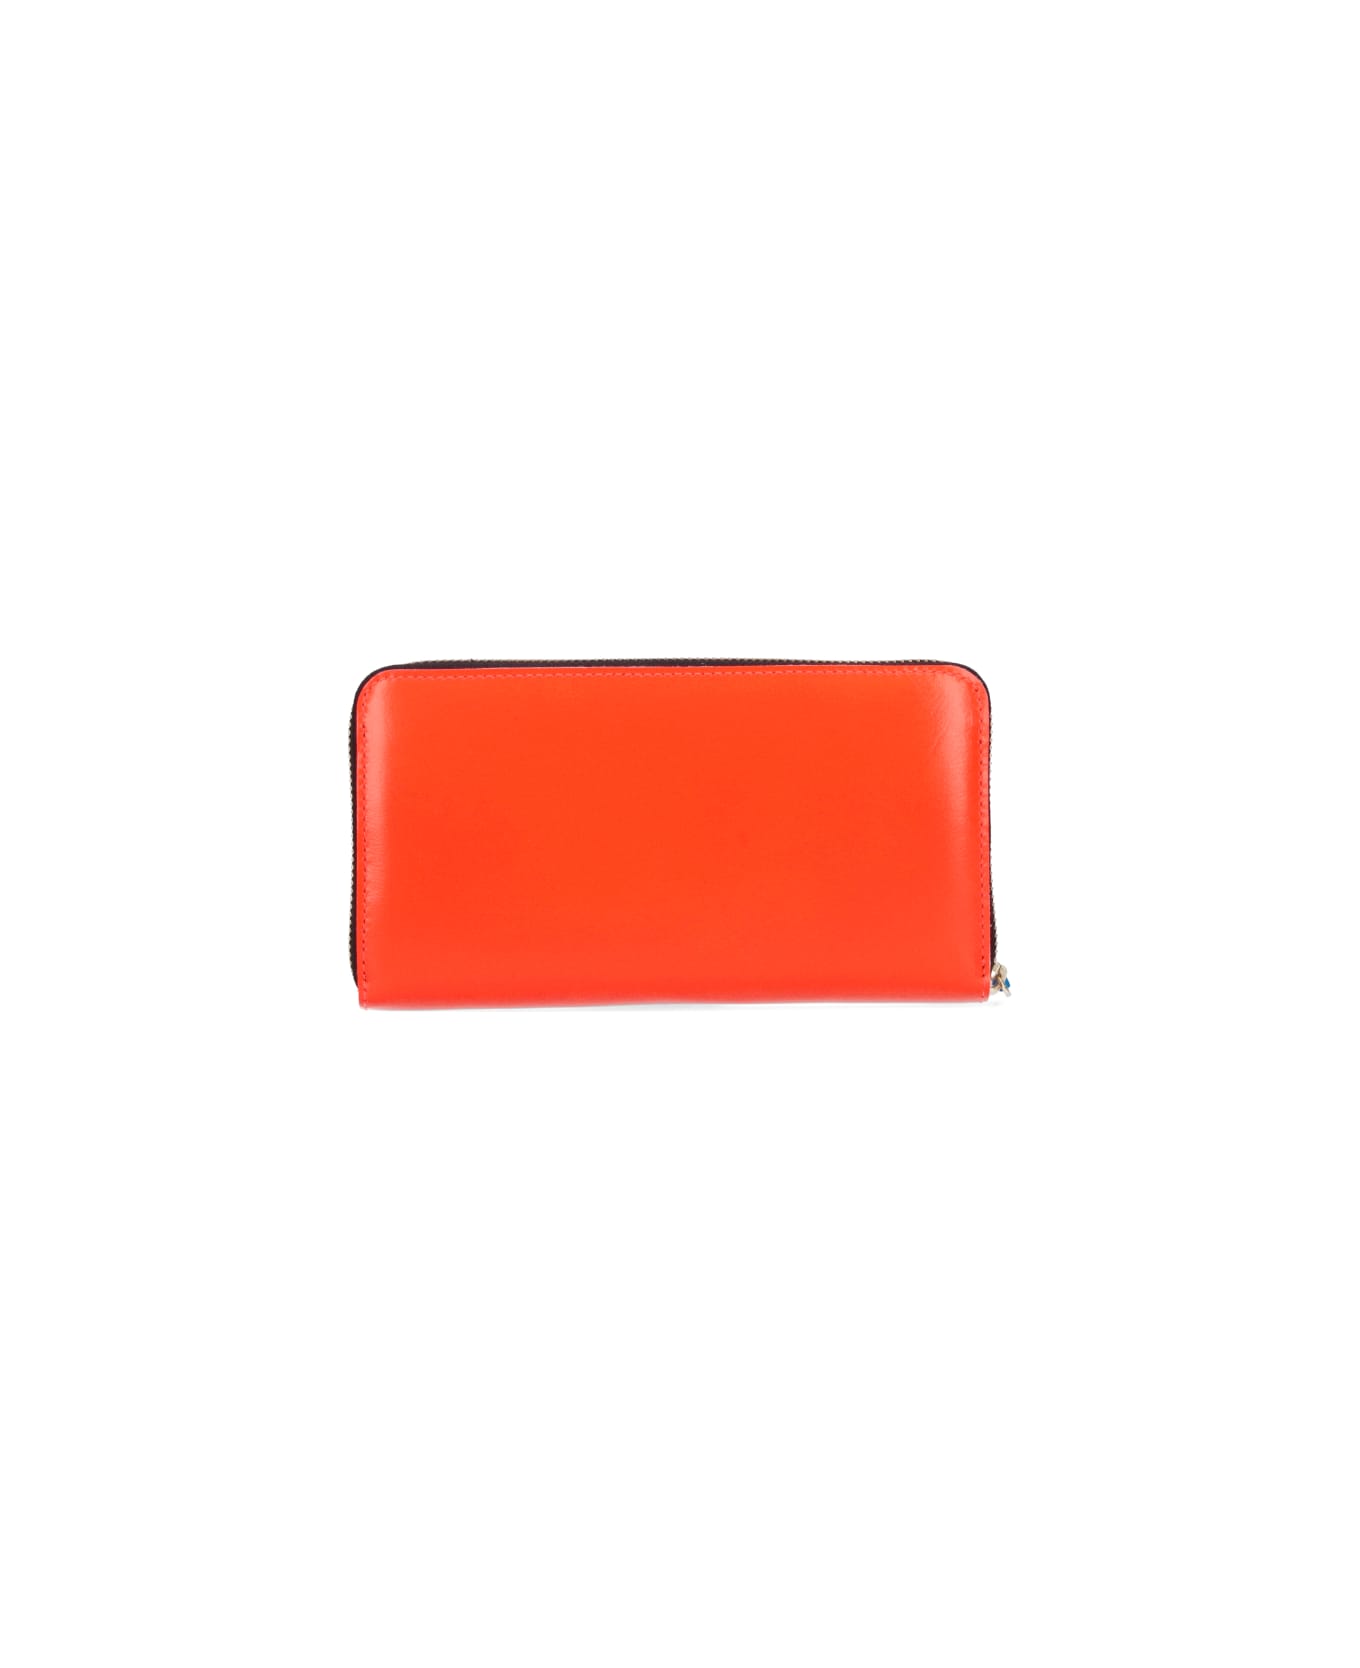 Comme des Garçons Wallet Super Fluo Zipper Wallet - Orange 財布